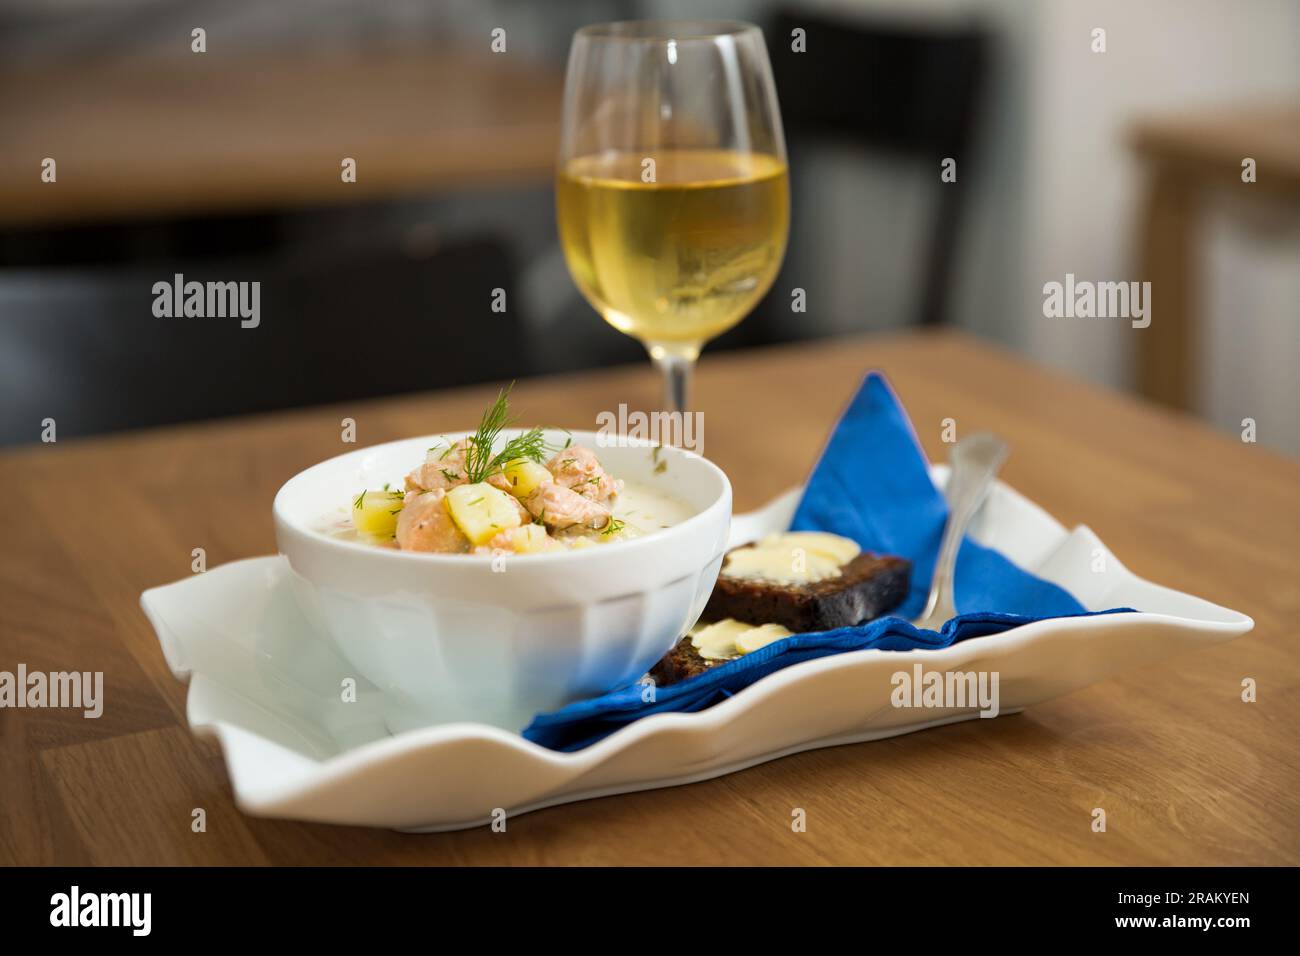 Eine Schüssel finnische Lohikeitto-Suppe, serviert auf einem Holztisch mit einem Stück schwedischem Roggenbrot. Cremige Brühe, zarte Kartoffeln und fleckiger rosa Lachs Stockfoto